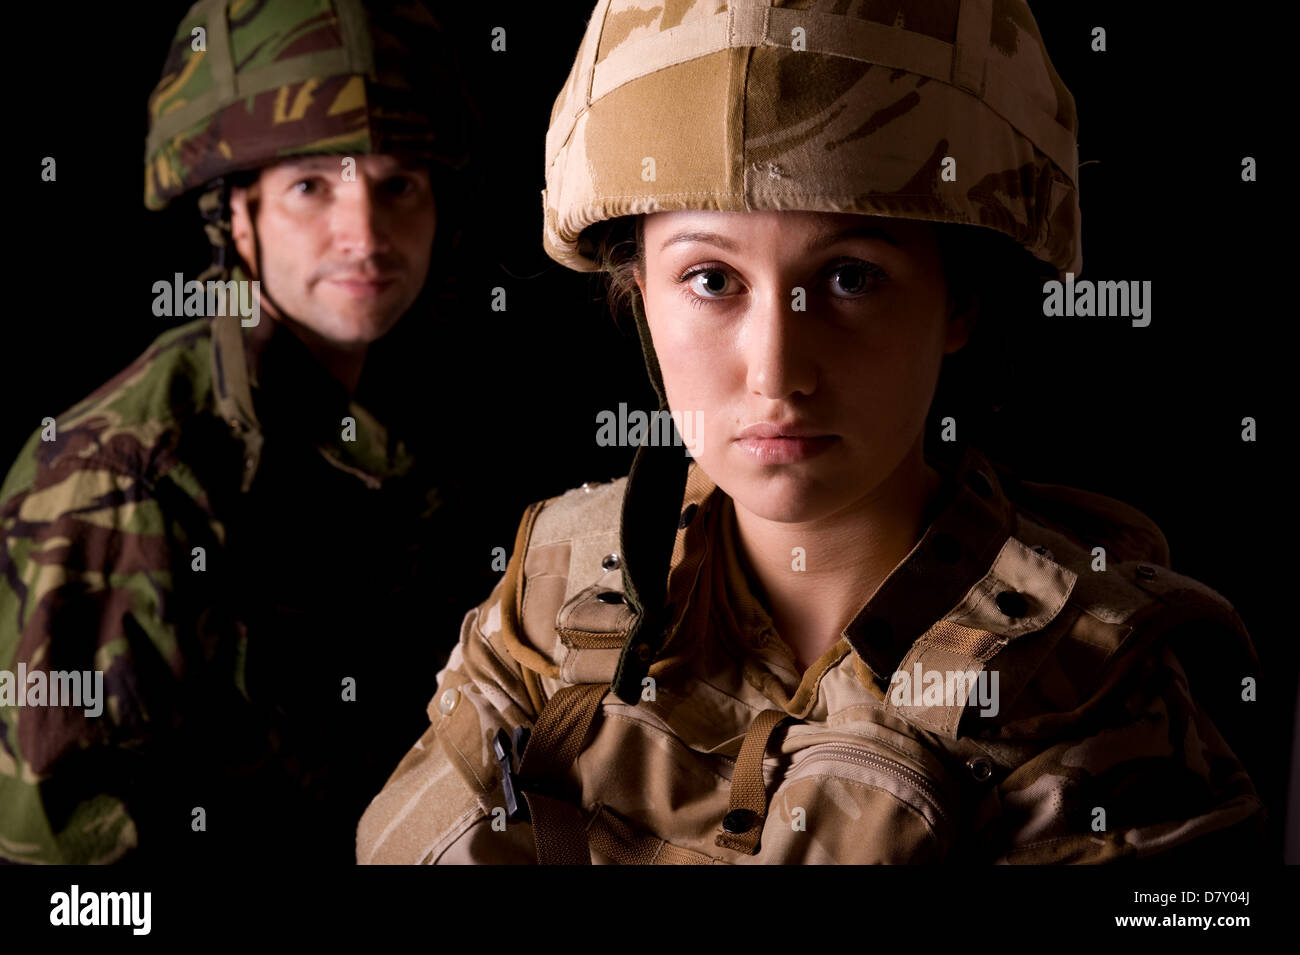 Femme soldat en uniforme du désert militaire britannique en premier plan &  homme soldat en uniforme de camouflage vert dans l'arrière-plan Photo Stock  - Alamy